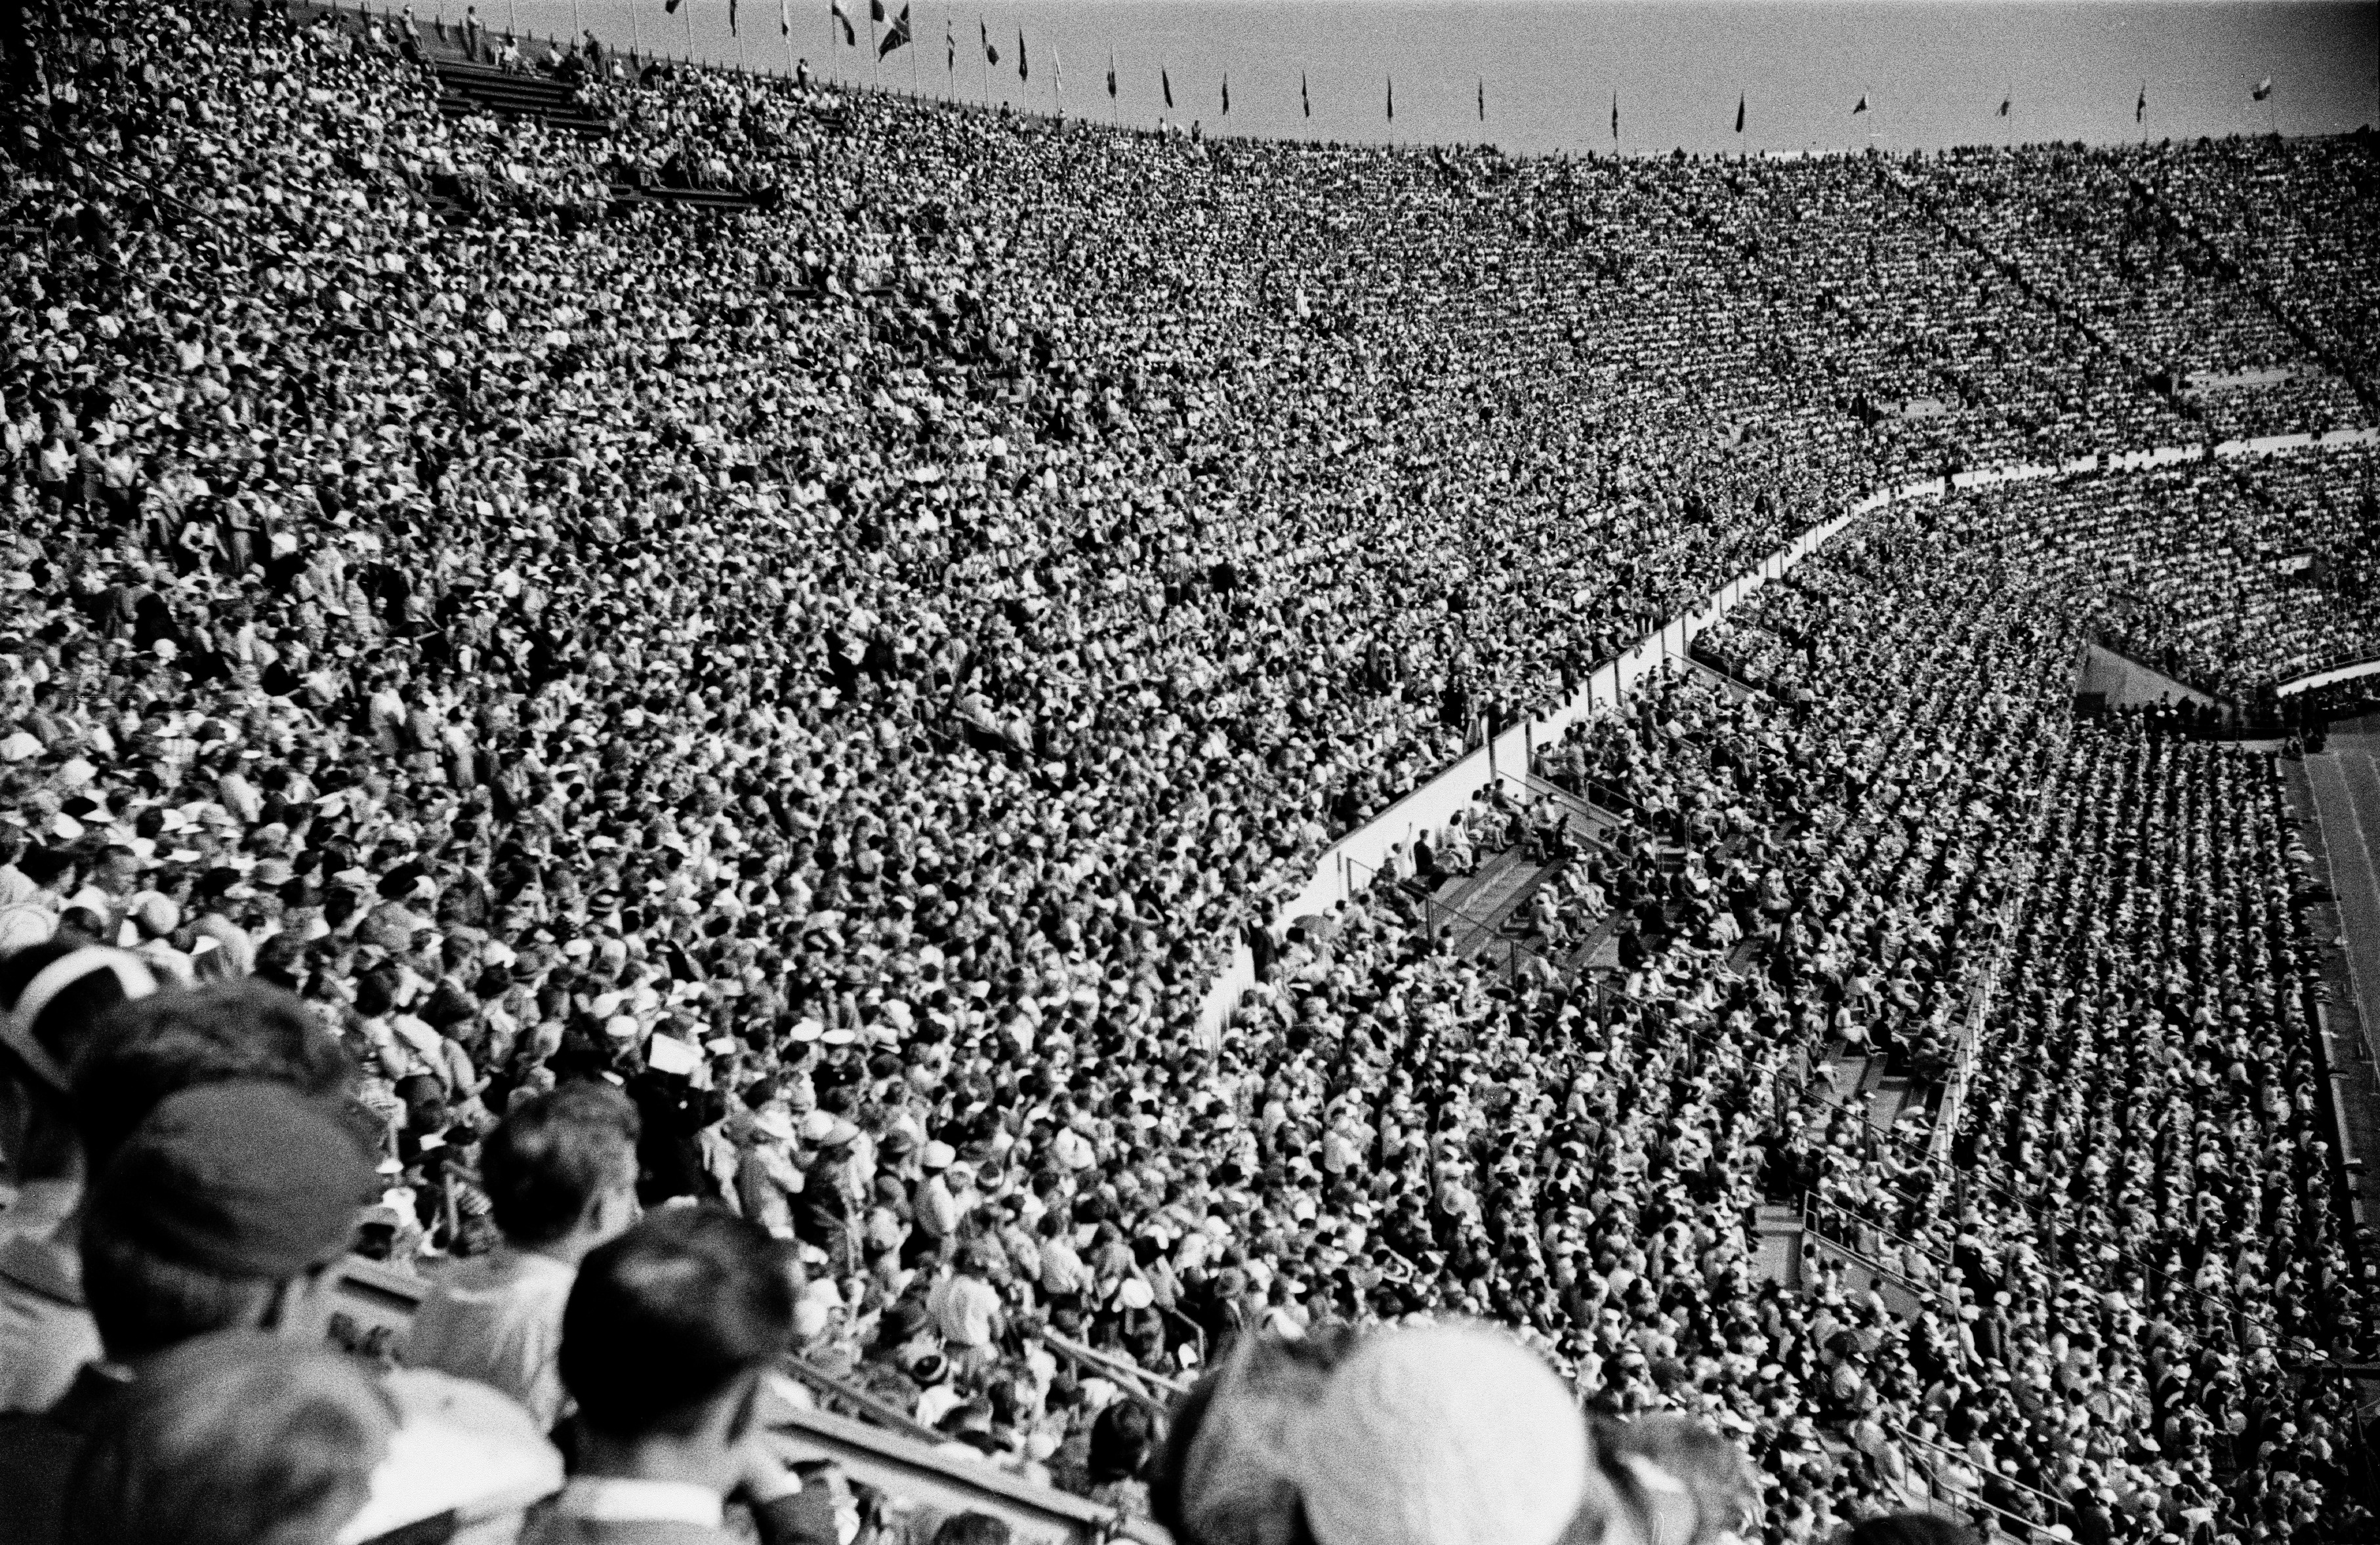 Helsingin olympiakisat 1952, kisojen päätöspäivä. Esteratsastuskilpailu Olympiastadionilla, katsomo täynnä yleisöä.